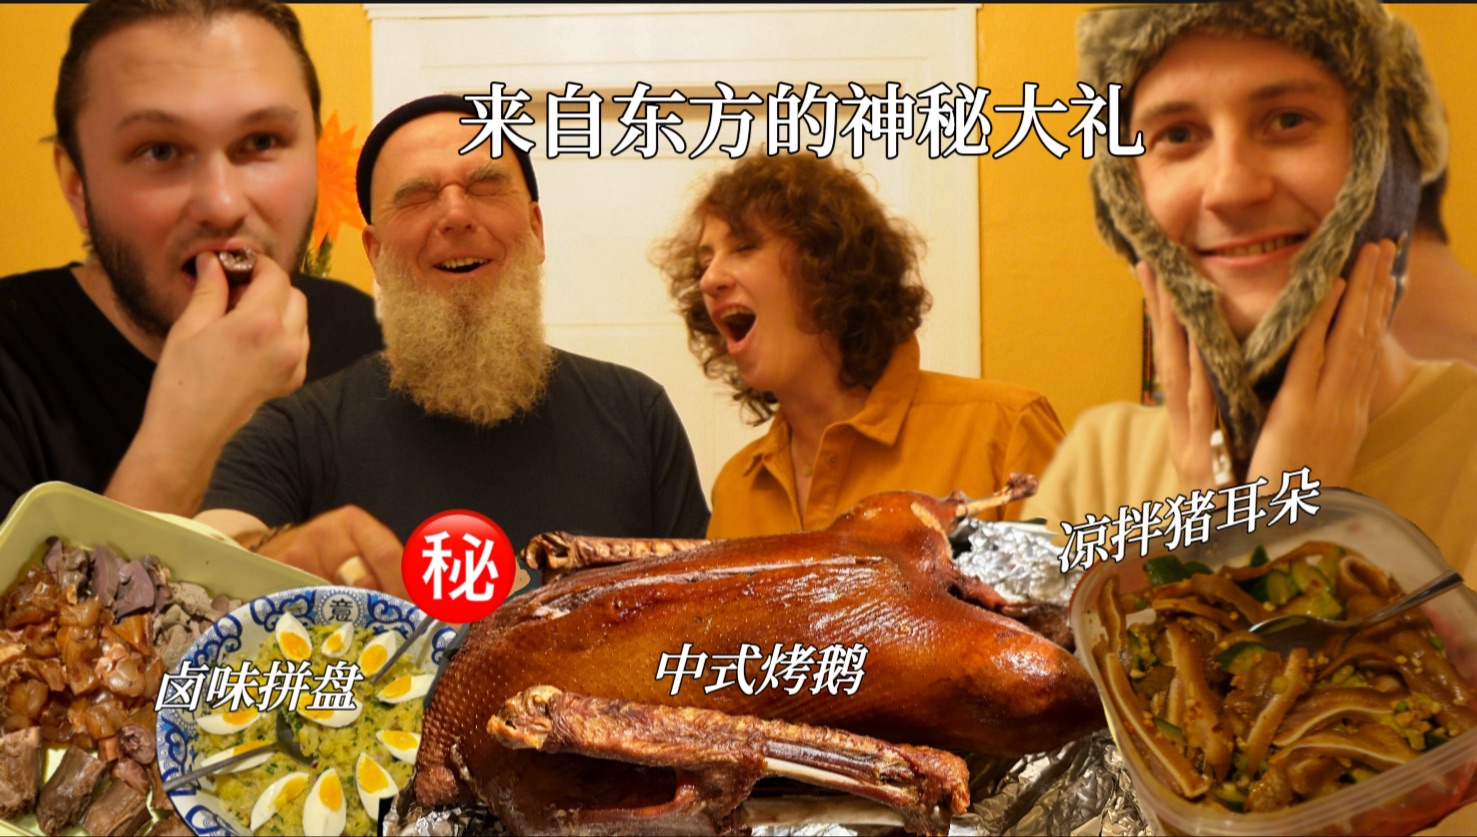 中式烤鹅、卤味拼盘强势占领德国圣诞餐桌！三父子狂啃大鹅停不住!